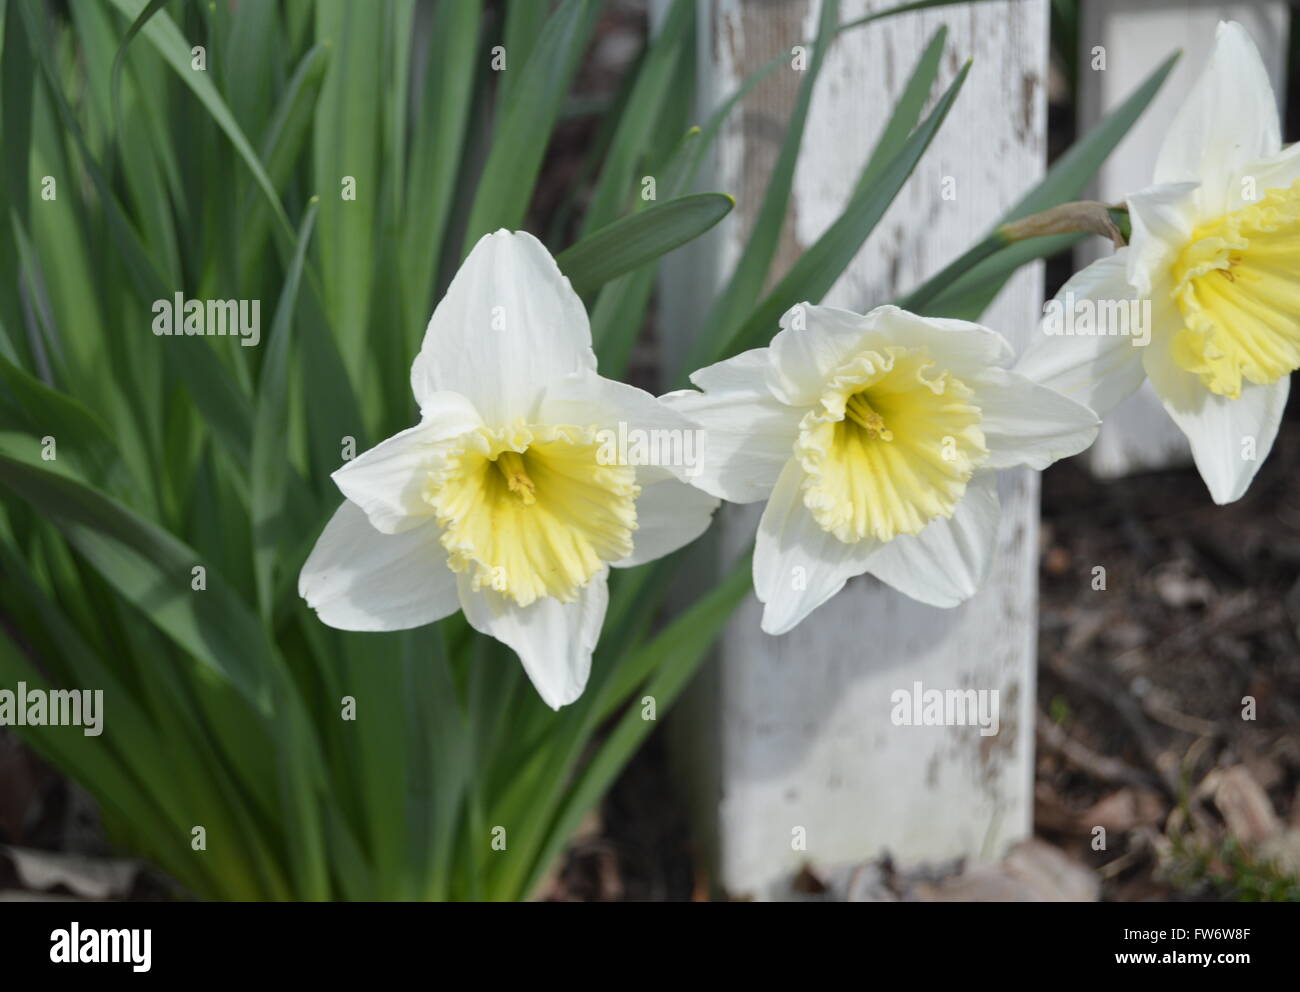 Post ein Bild von drei voll blühten weiße Narzissen mit einem einzigen weißen Zaun im Hintergrund. Stockfoto